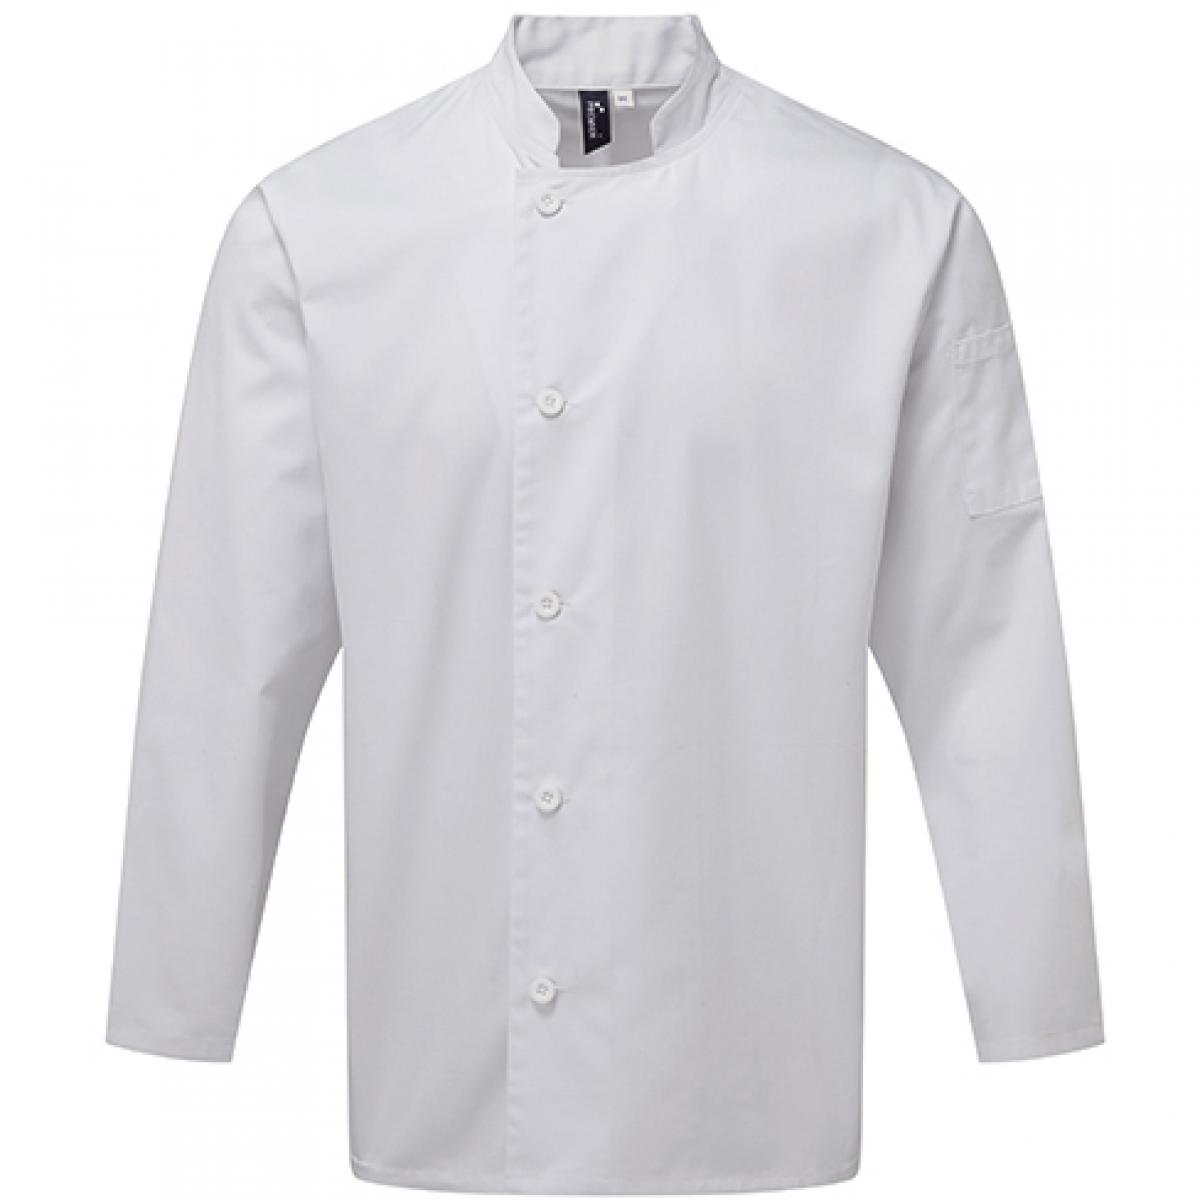 Hersteller: Premier Workwear Herstellernummer: PR901 Artikelbezeichnung: Kochjacke Essential Long Sleeve Chefs Jacket Farbe: White